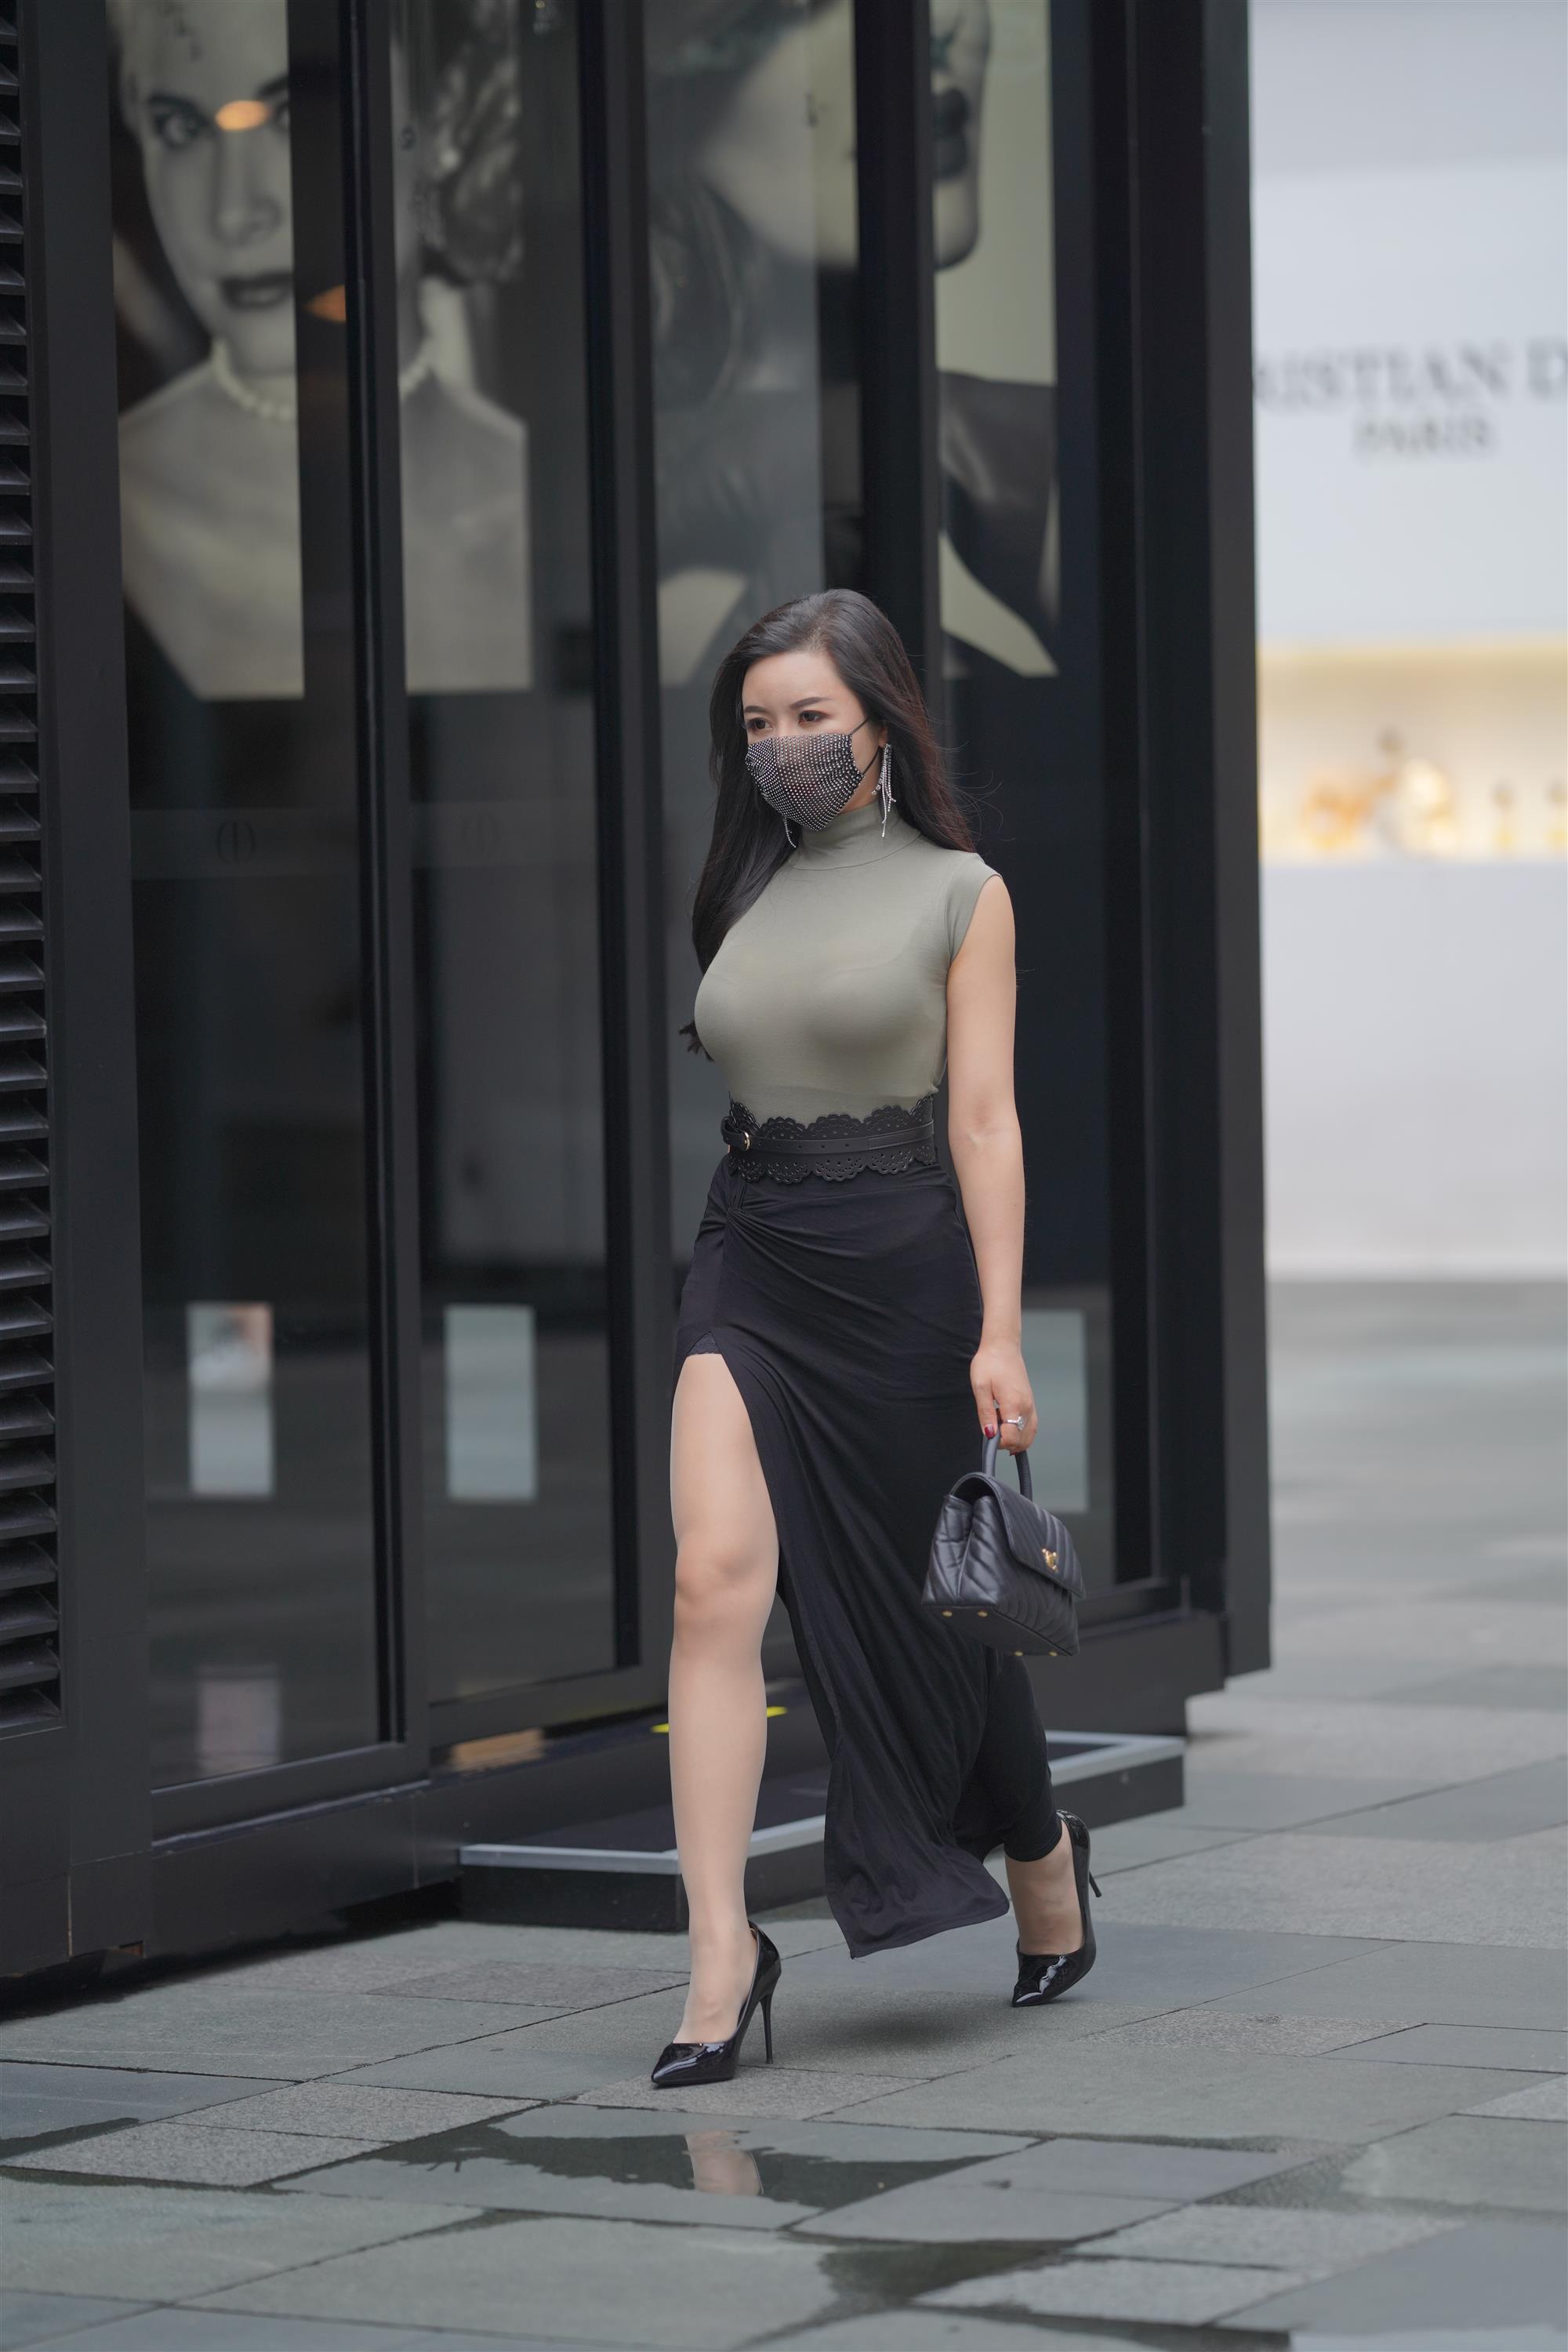 Street 欣儿 Long black skirt - 144.jpg